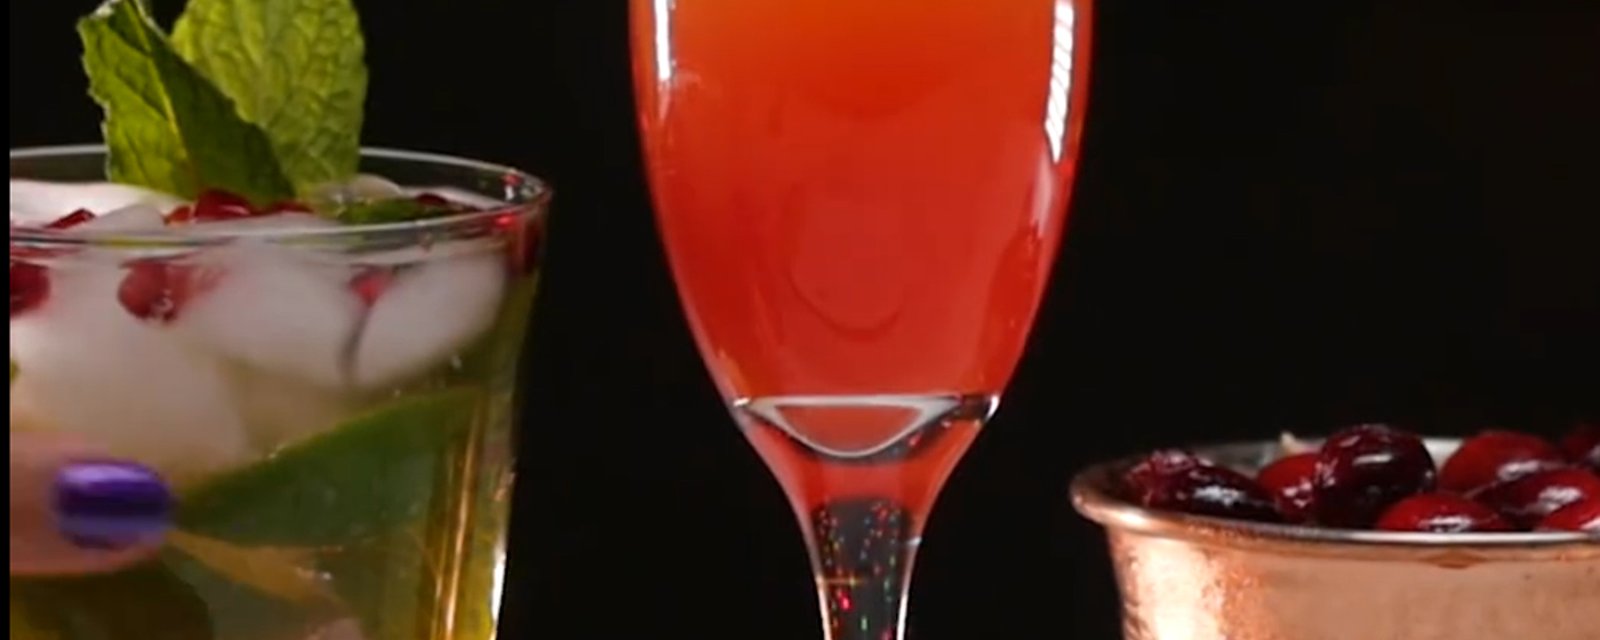 Ces cocktails sans alcool vous mettront le coeur en fête